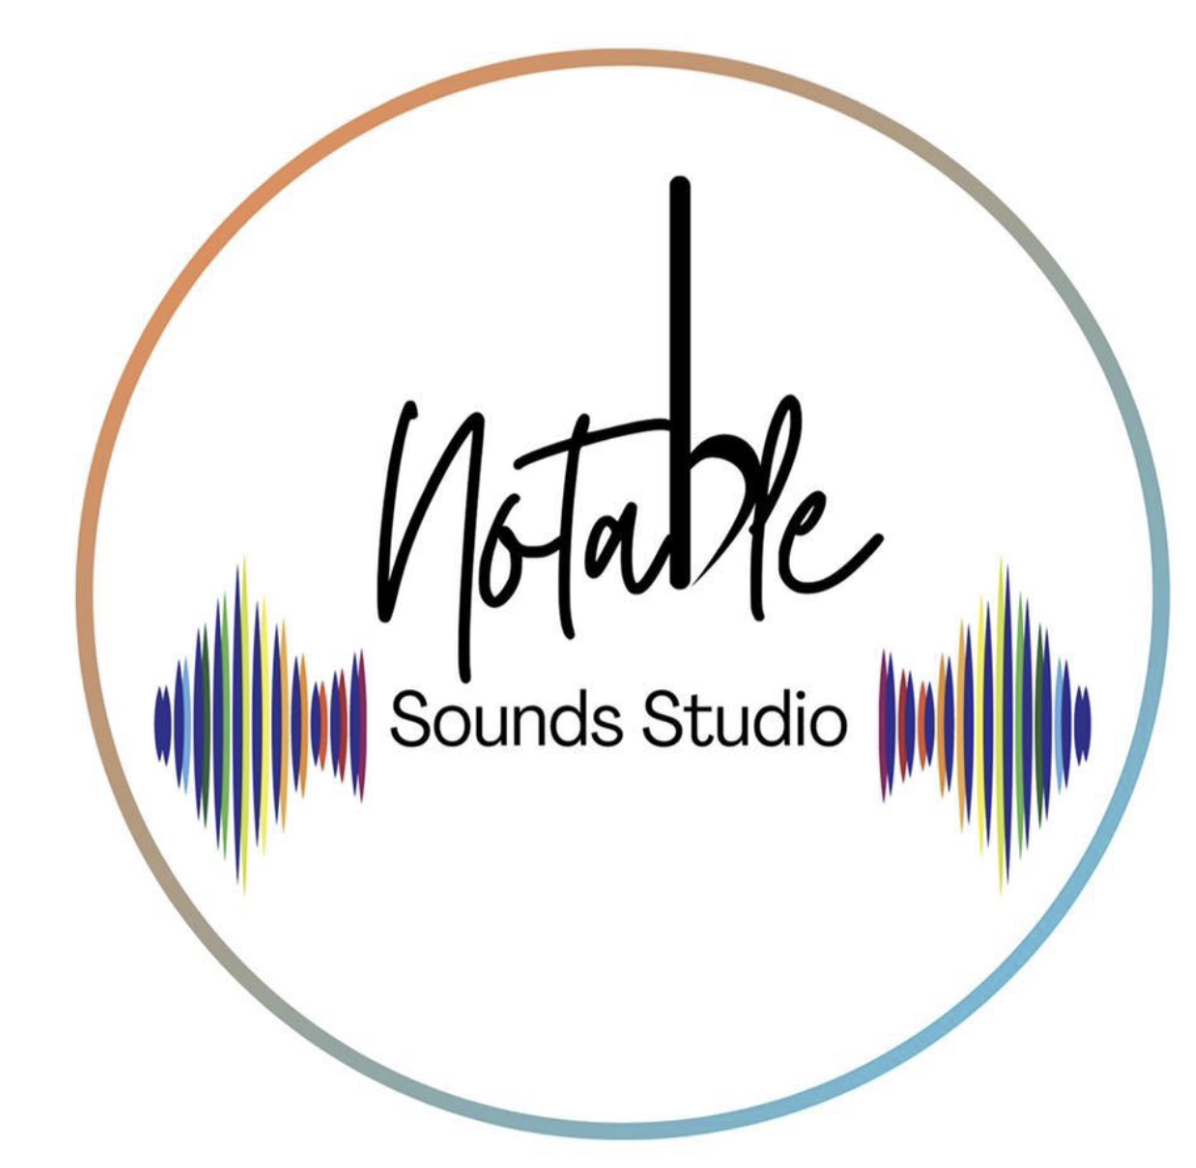 Notable Sounds Studio logo